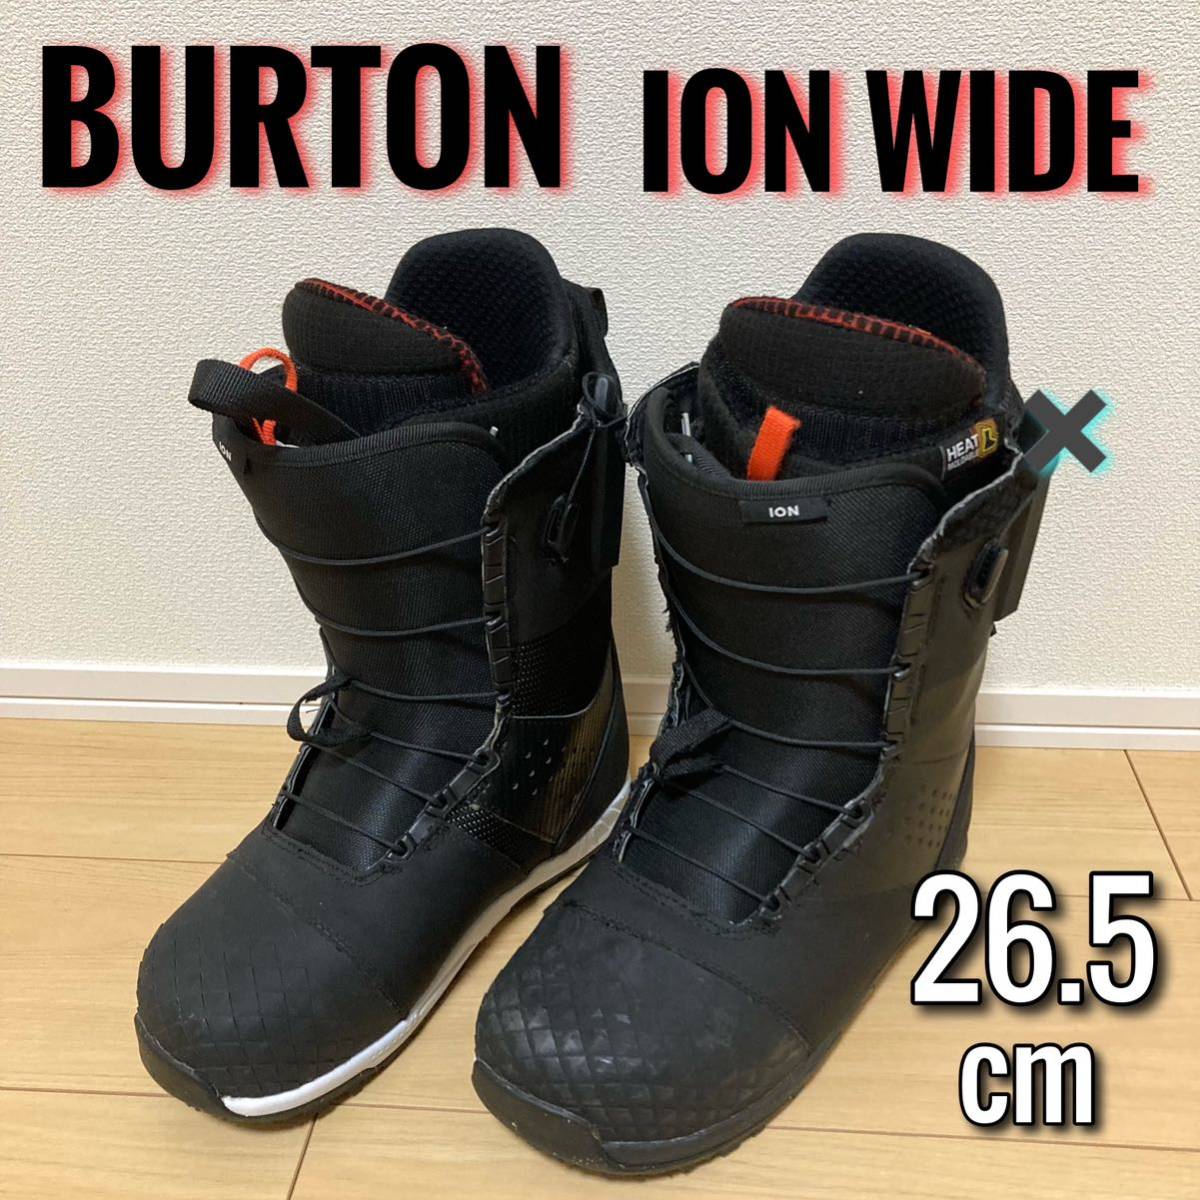 BURTON ION WIDE 26.5cm バートン アイオン ワイド 20-21モデル